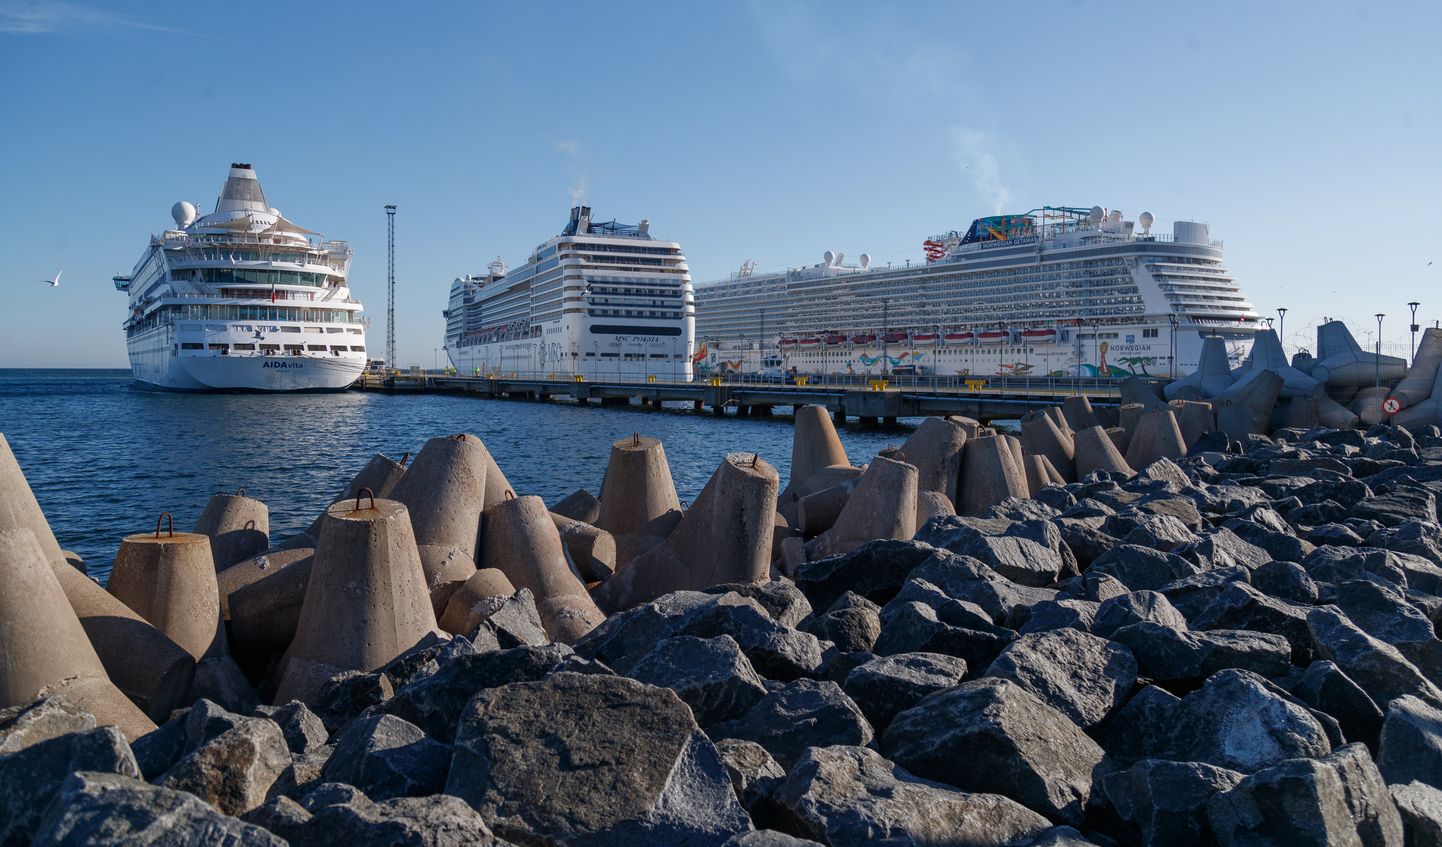 Kruiisilaevad saabumas hommikul Tallinna Vanasadama kruiisiterminali. MSC Poesia ja Norwegian Getaway